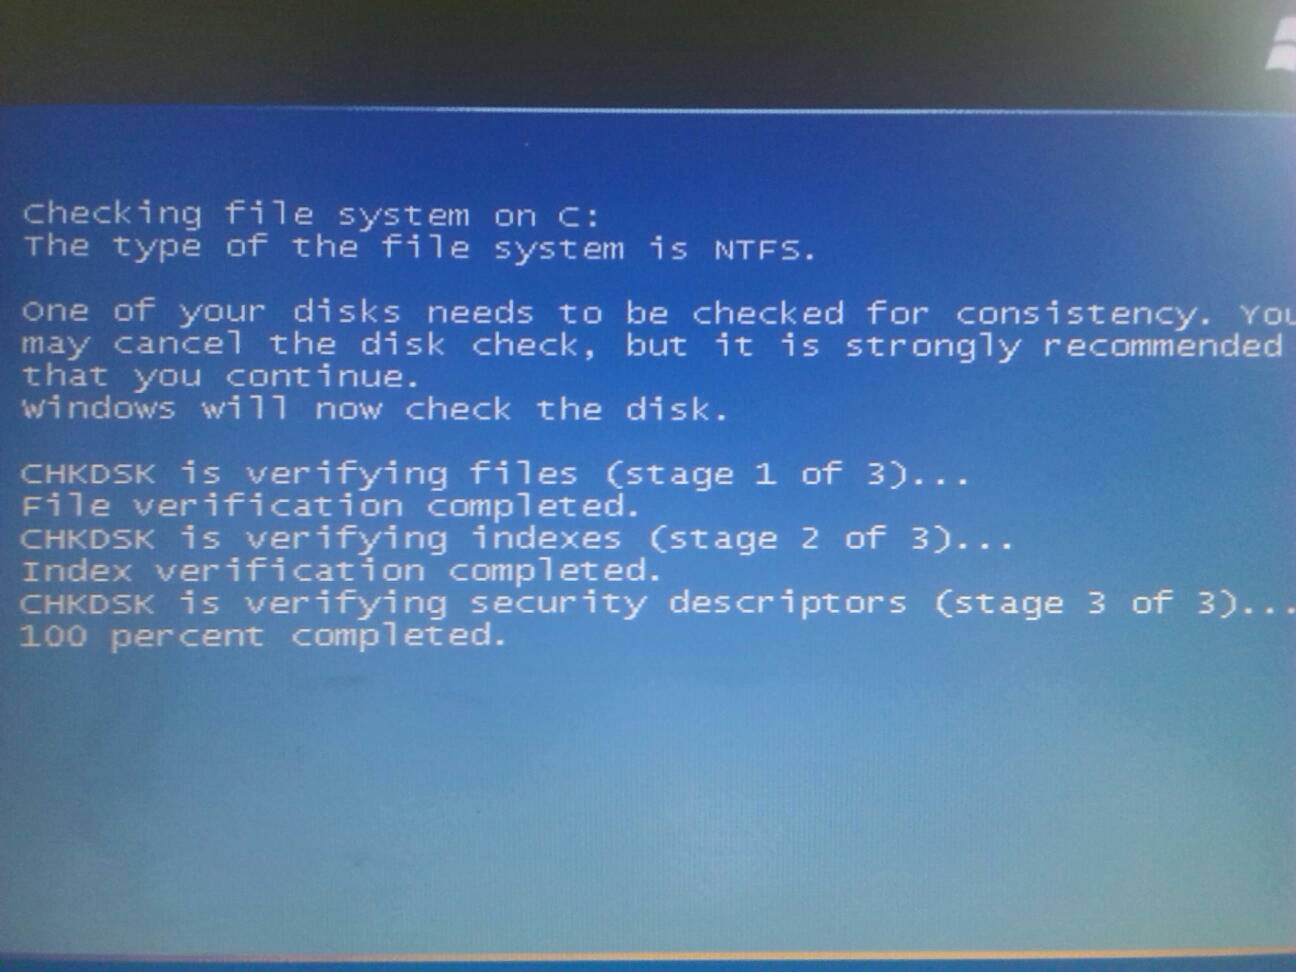 我的是主机电脑一下子关机就不能启动